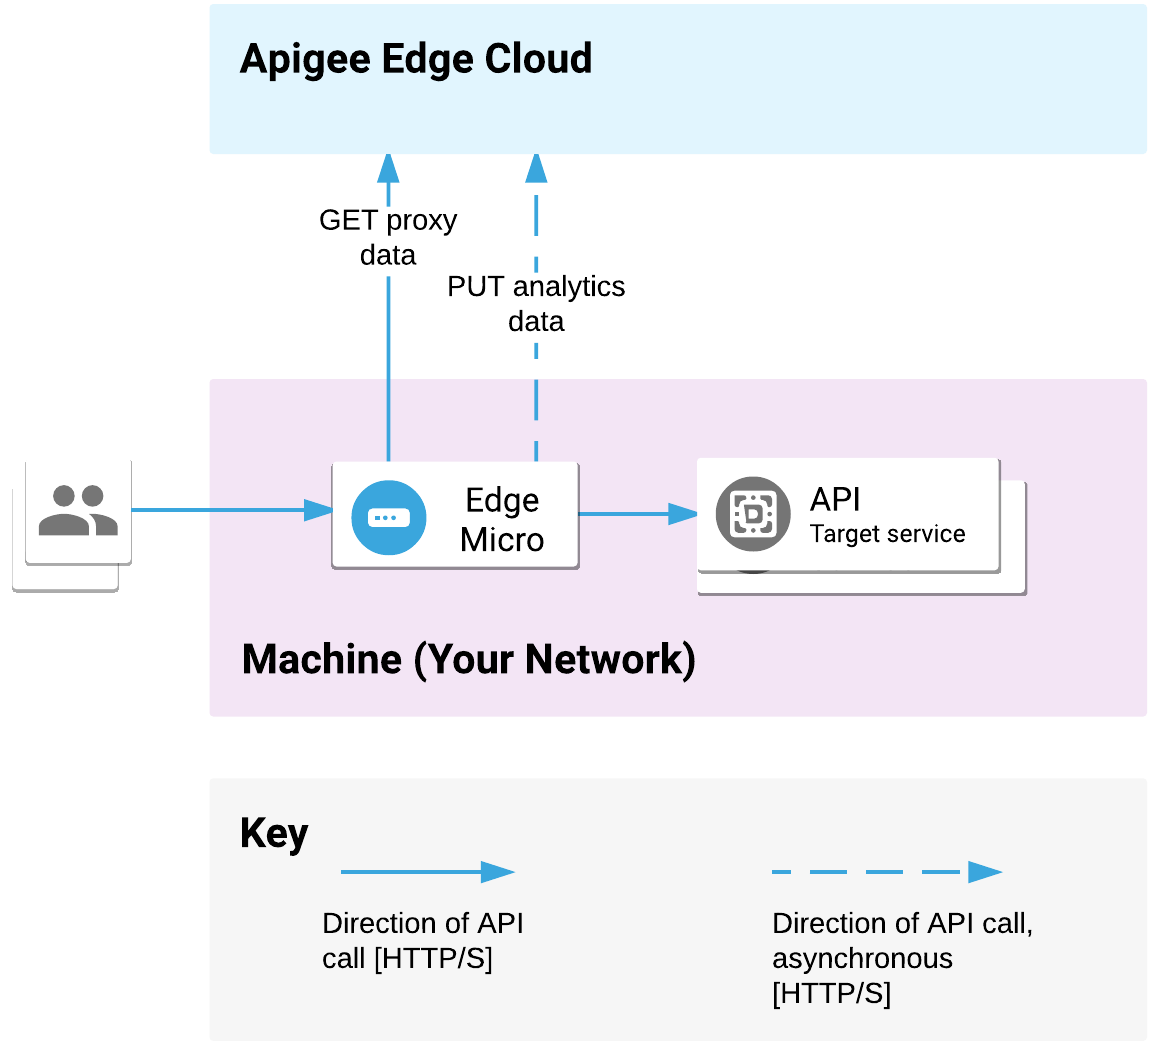 您的網路會部署 Edge Migateway。並處理來自用戶端的 API 要求及呼叫目標服務。Microgateway 能夠與 Apigee Edge Cloud 進行通訊，藉此傳送 Proxy 和數據分析資料。